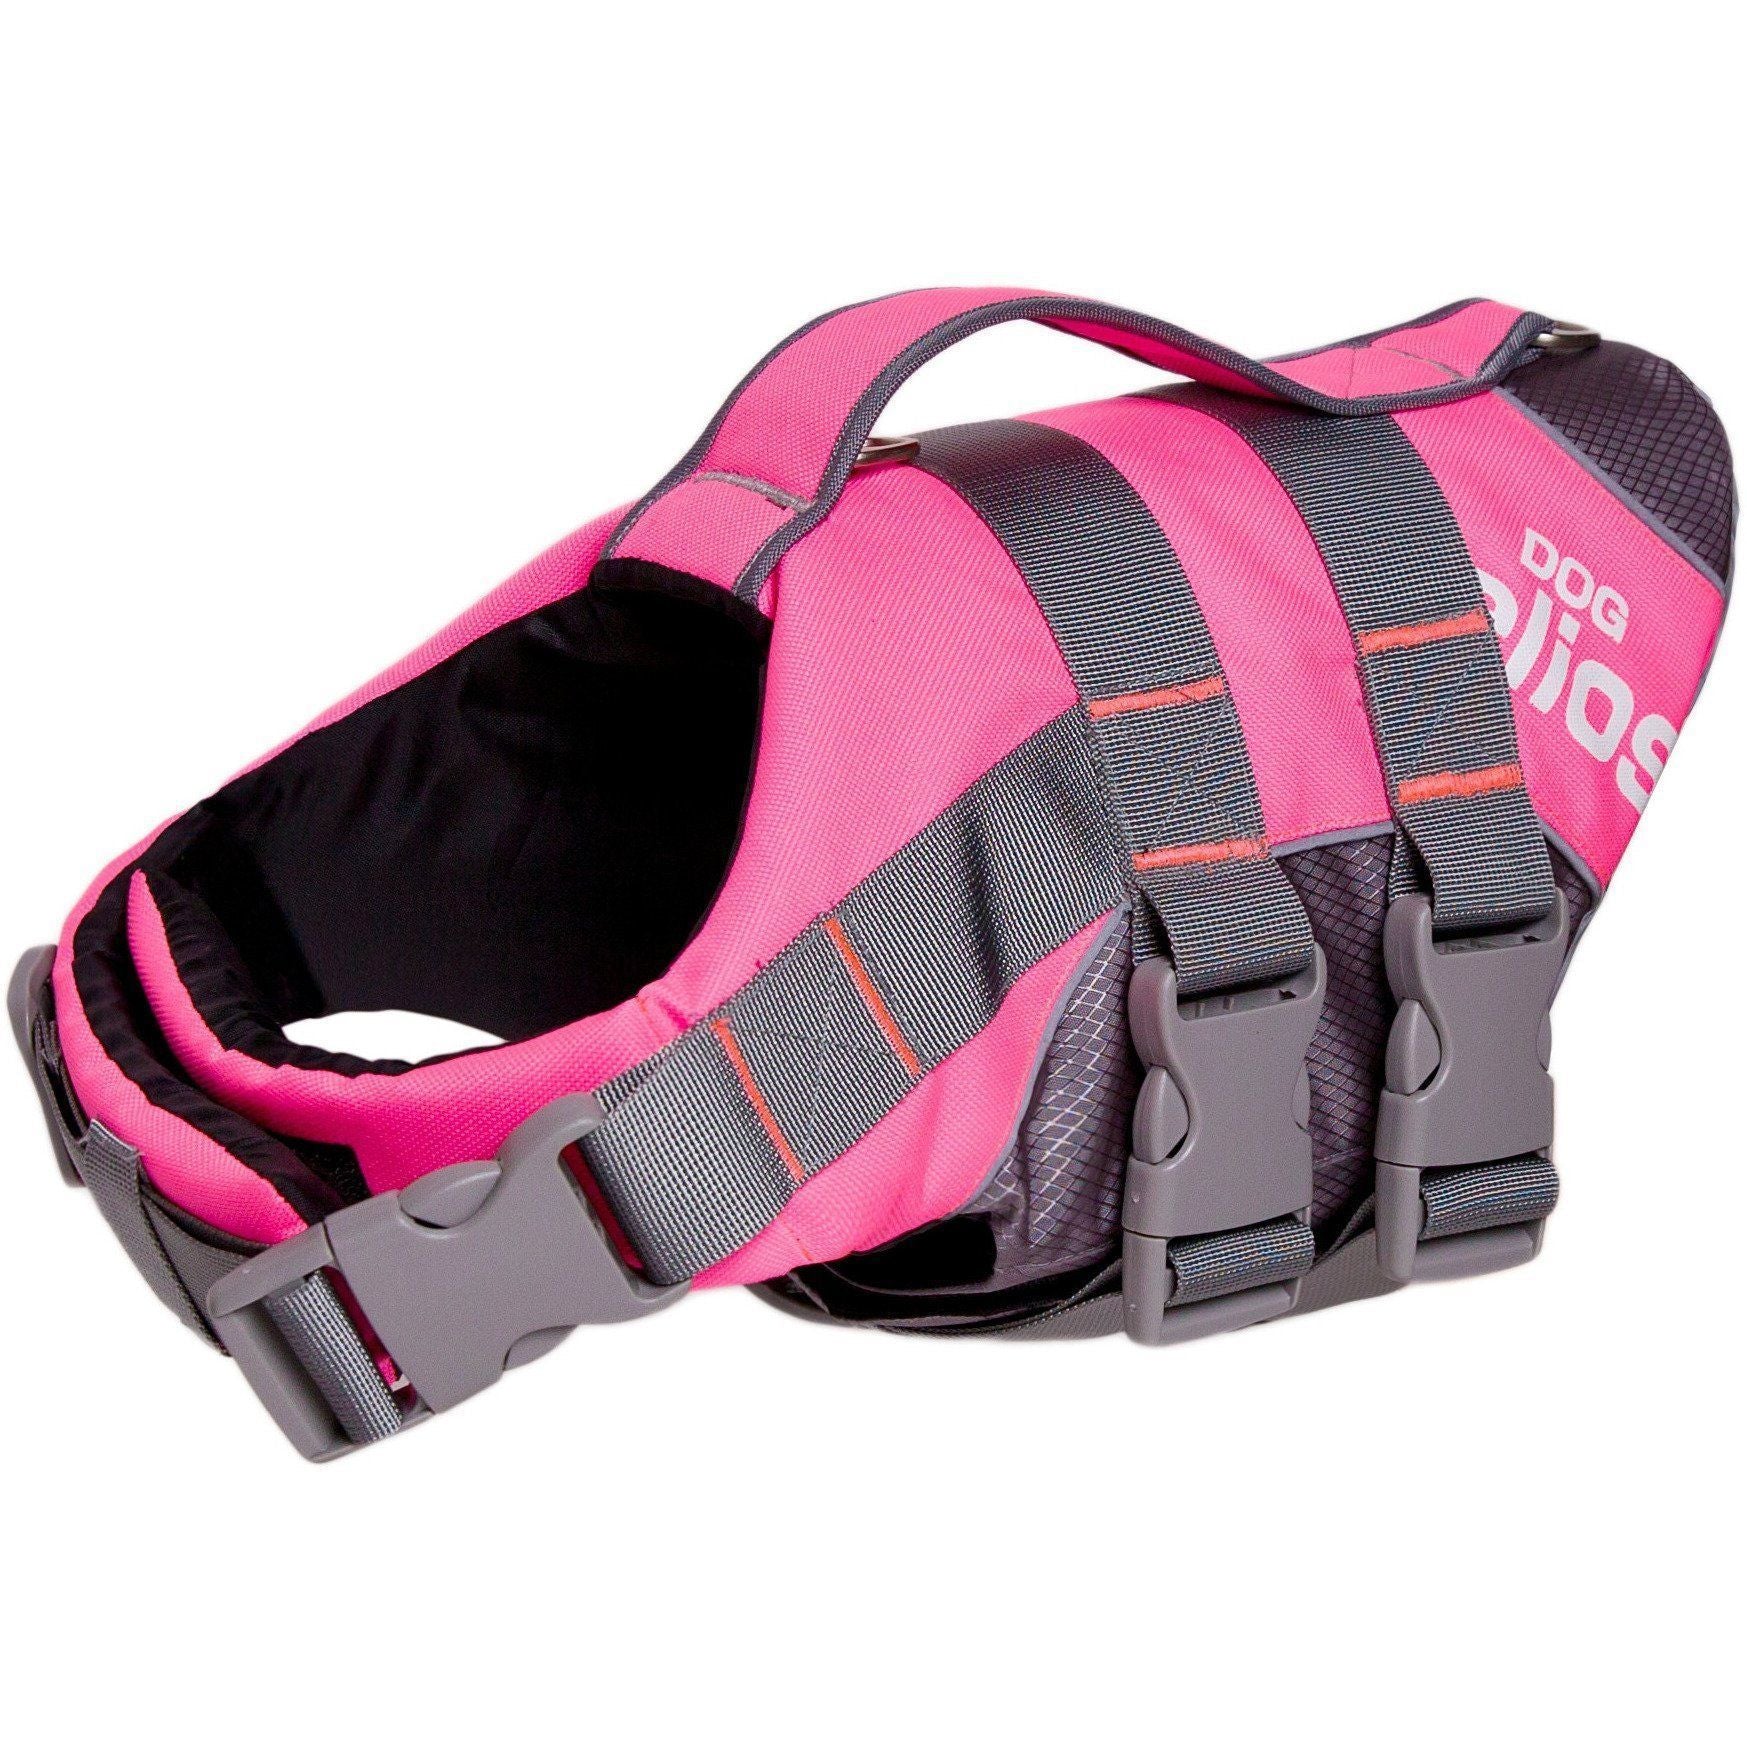 Dog Helios ® 'Splash-Explore' Reflective and Adjustable Floating Safety Dog Life Jacket Small Pink